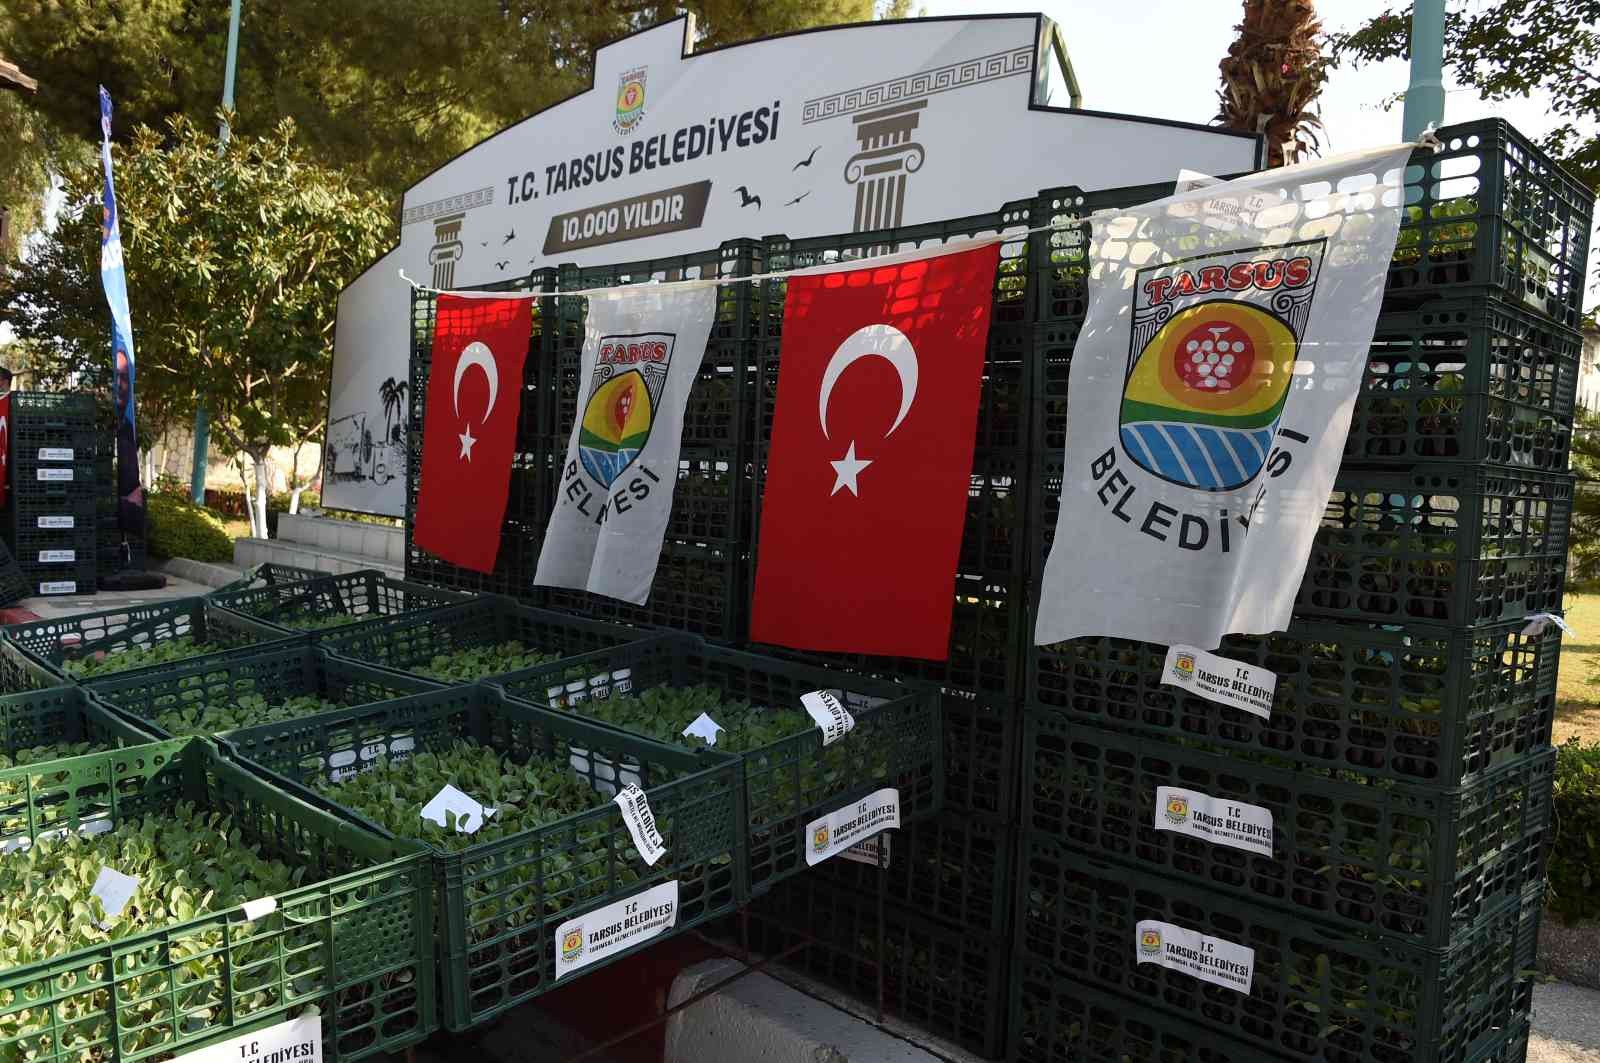 Tarsus Belediyesi, çiftçilere 500 bin adet karnabahar, brokoli ve marul fidesi dağıttı